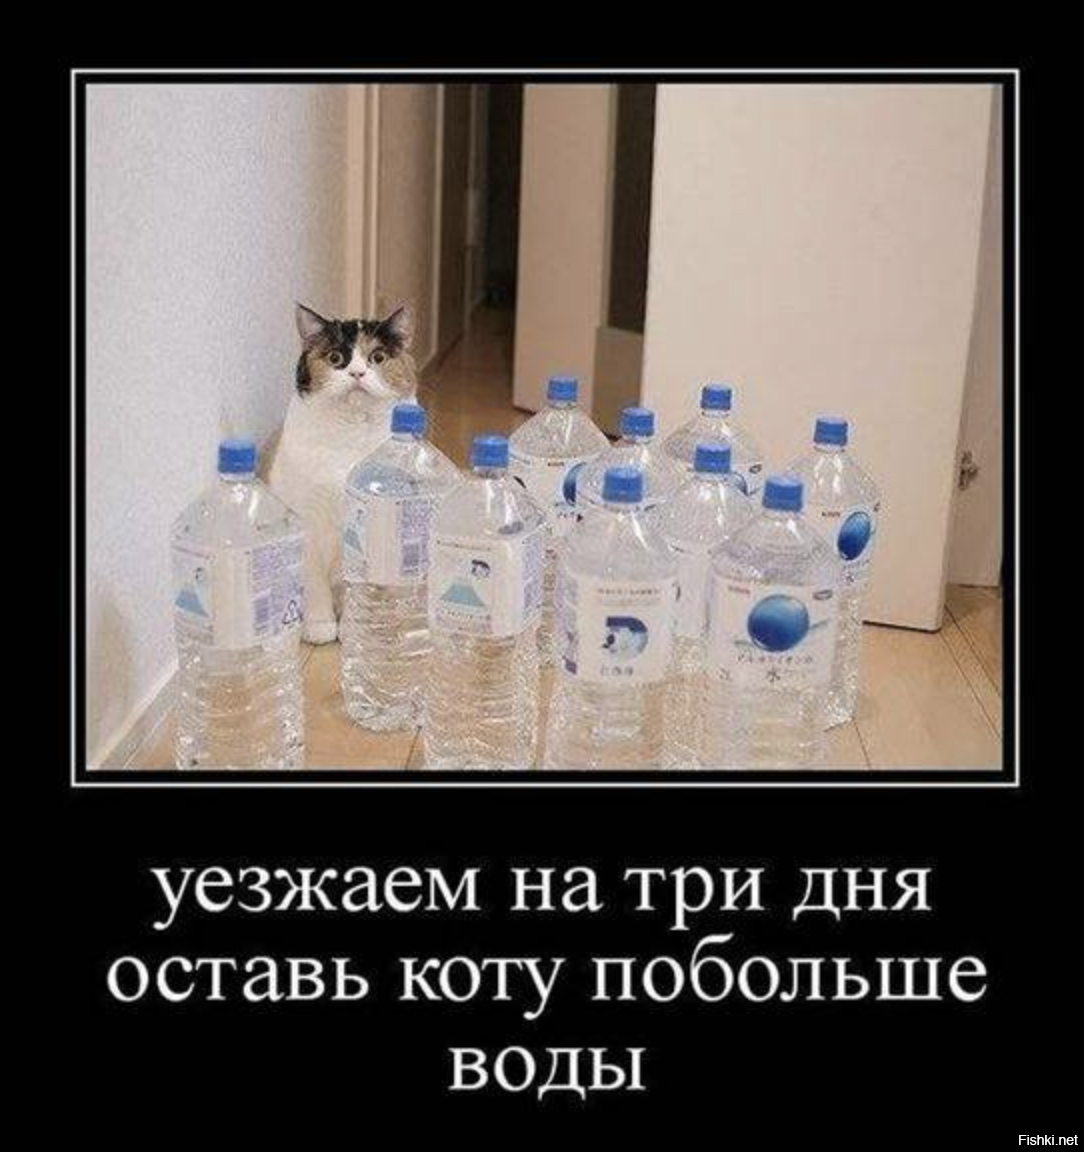 Оставь коту побольше воды